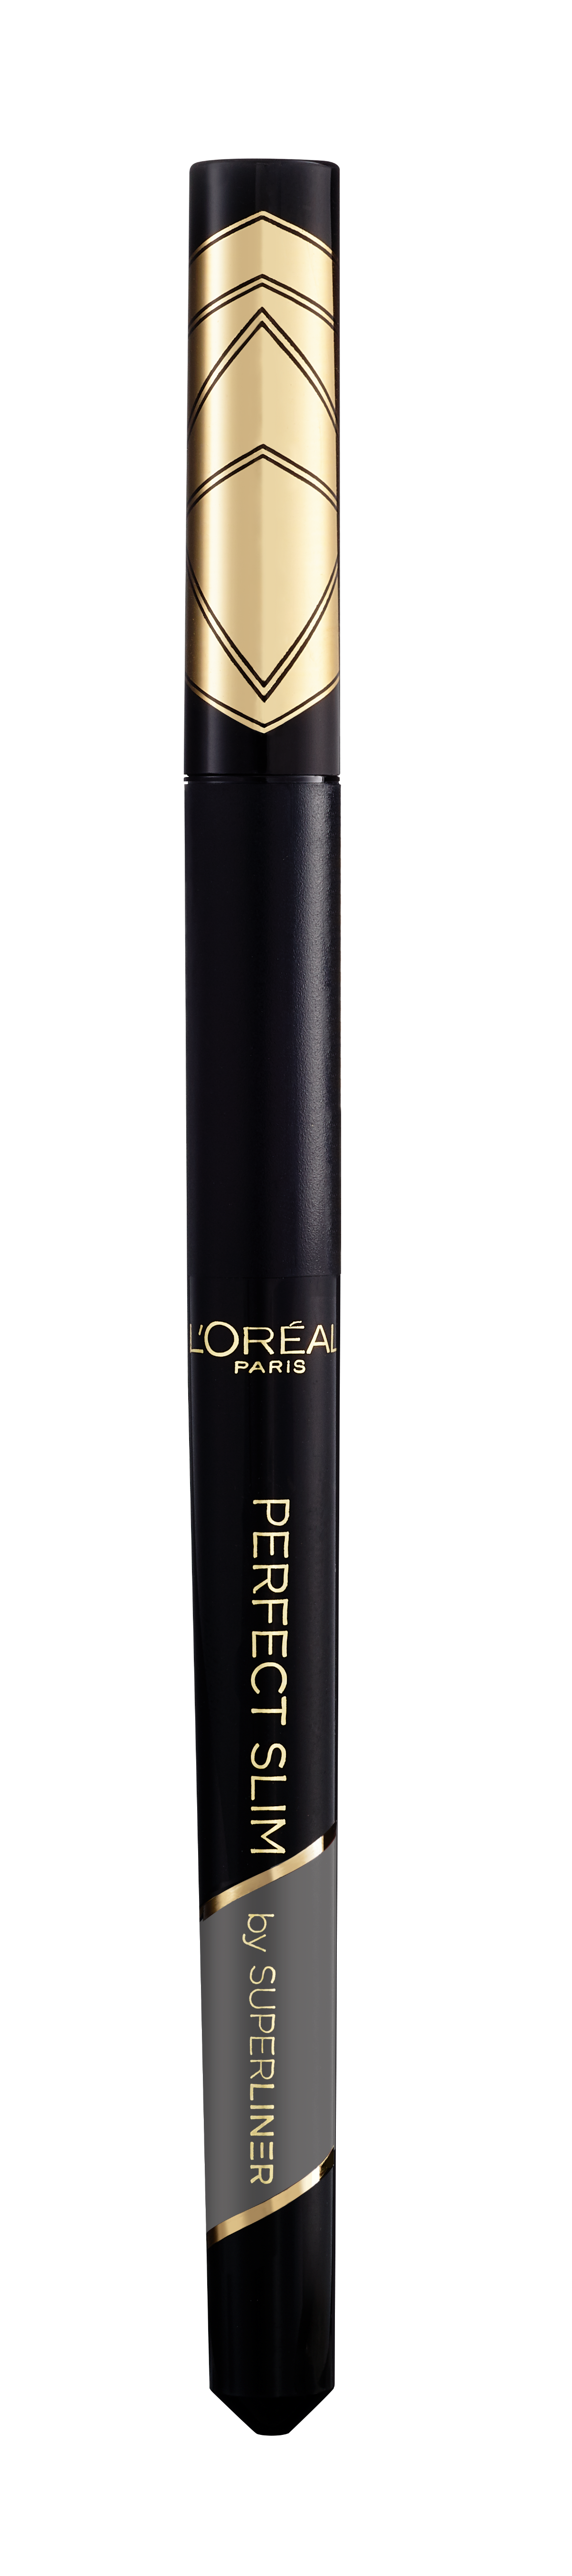 Підводка для очей L’Oréal Paris Super Liner Perfect Slim, відтінок 02, 1 мл (AA212700) - фото 1